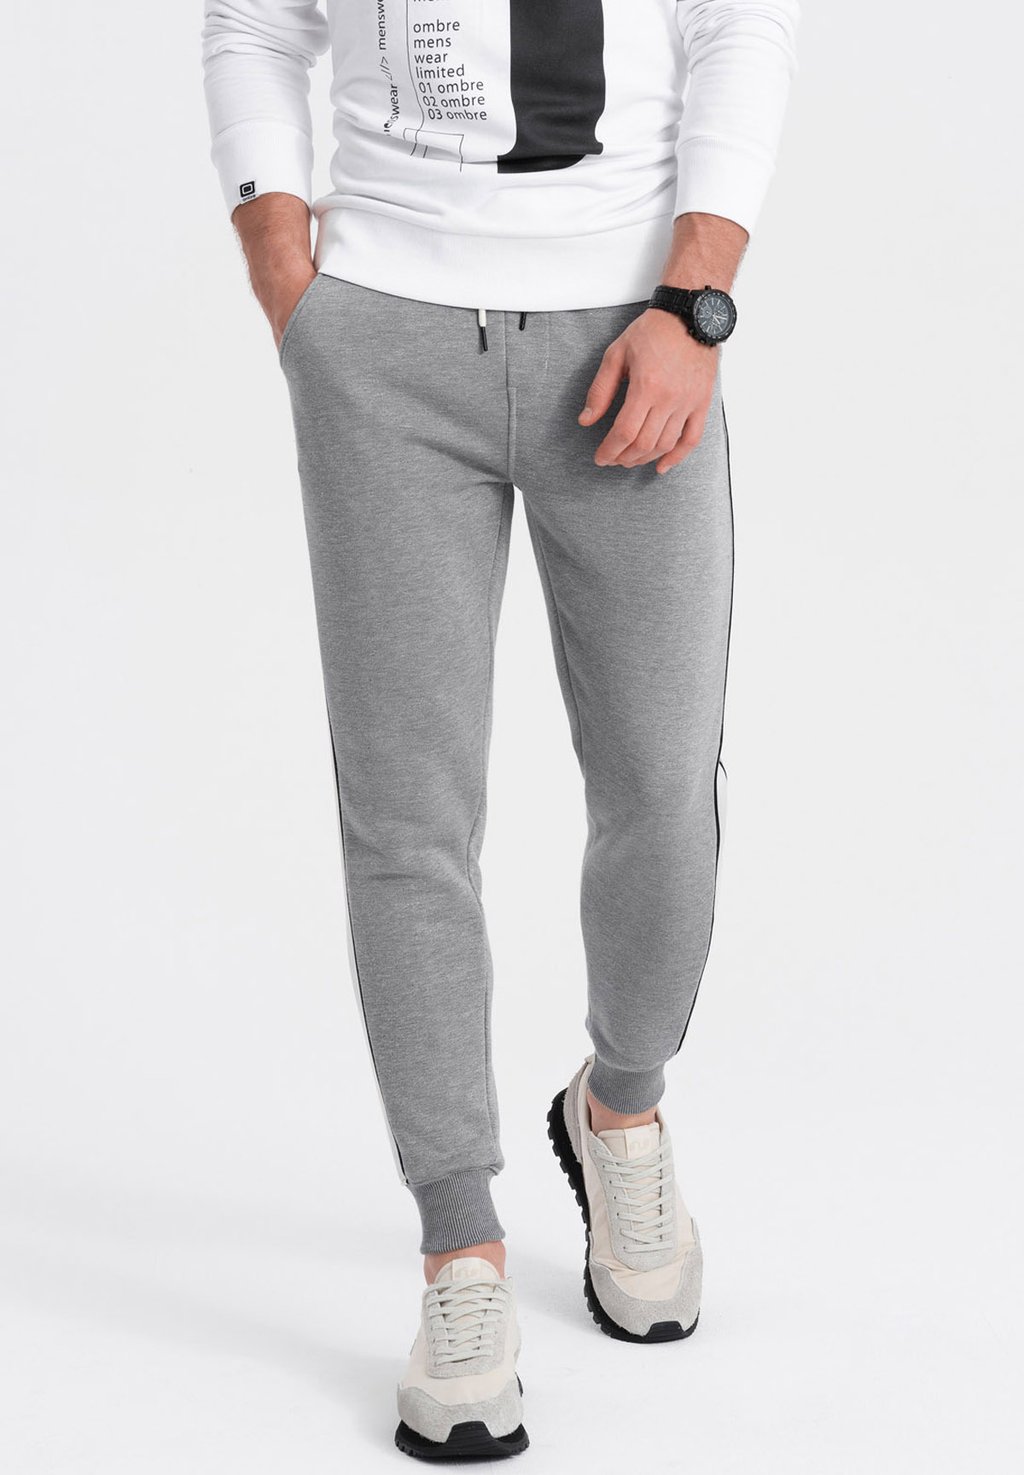 Спортивные брюки Ombre, серый меланж спортивные брюки kappa серый меланж